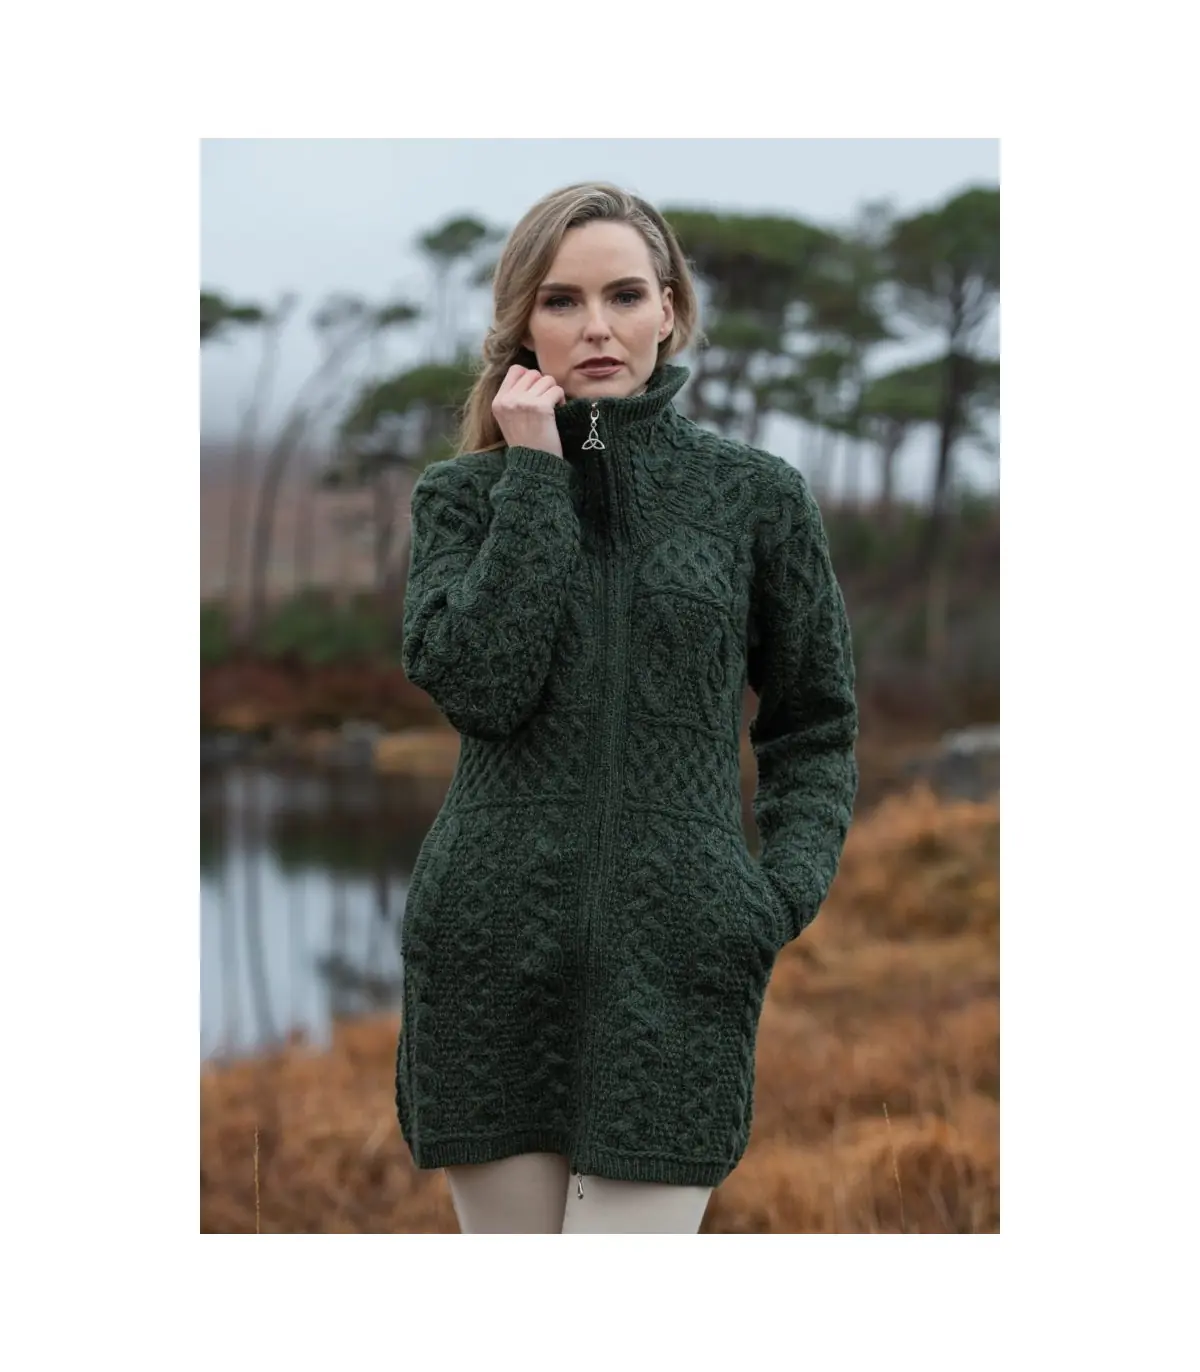 Foulard d'hiver vert kaki en laine pour homme - Chaud et confortable.